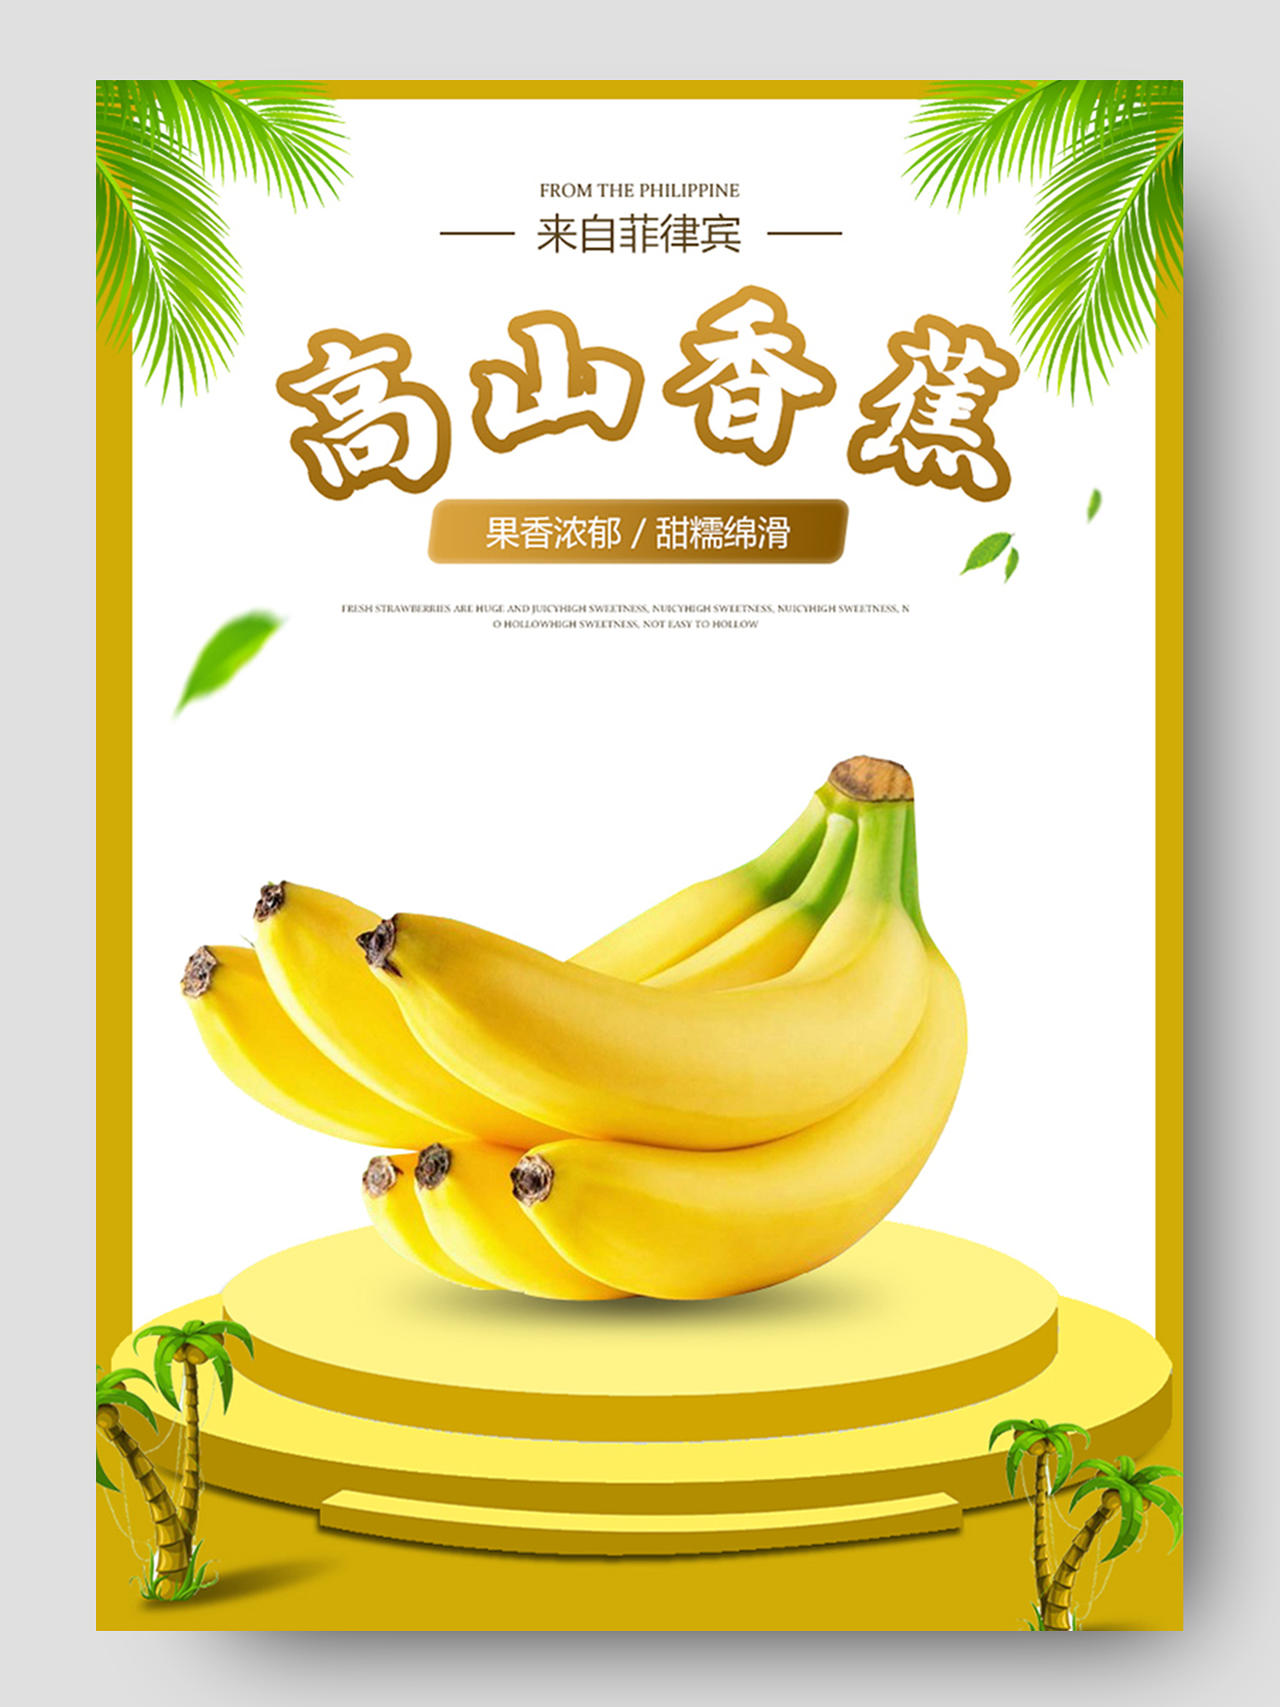 黄色主题香蕉高山香蕉水果水果生鲜秋天秋季香蕉详情页